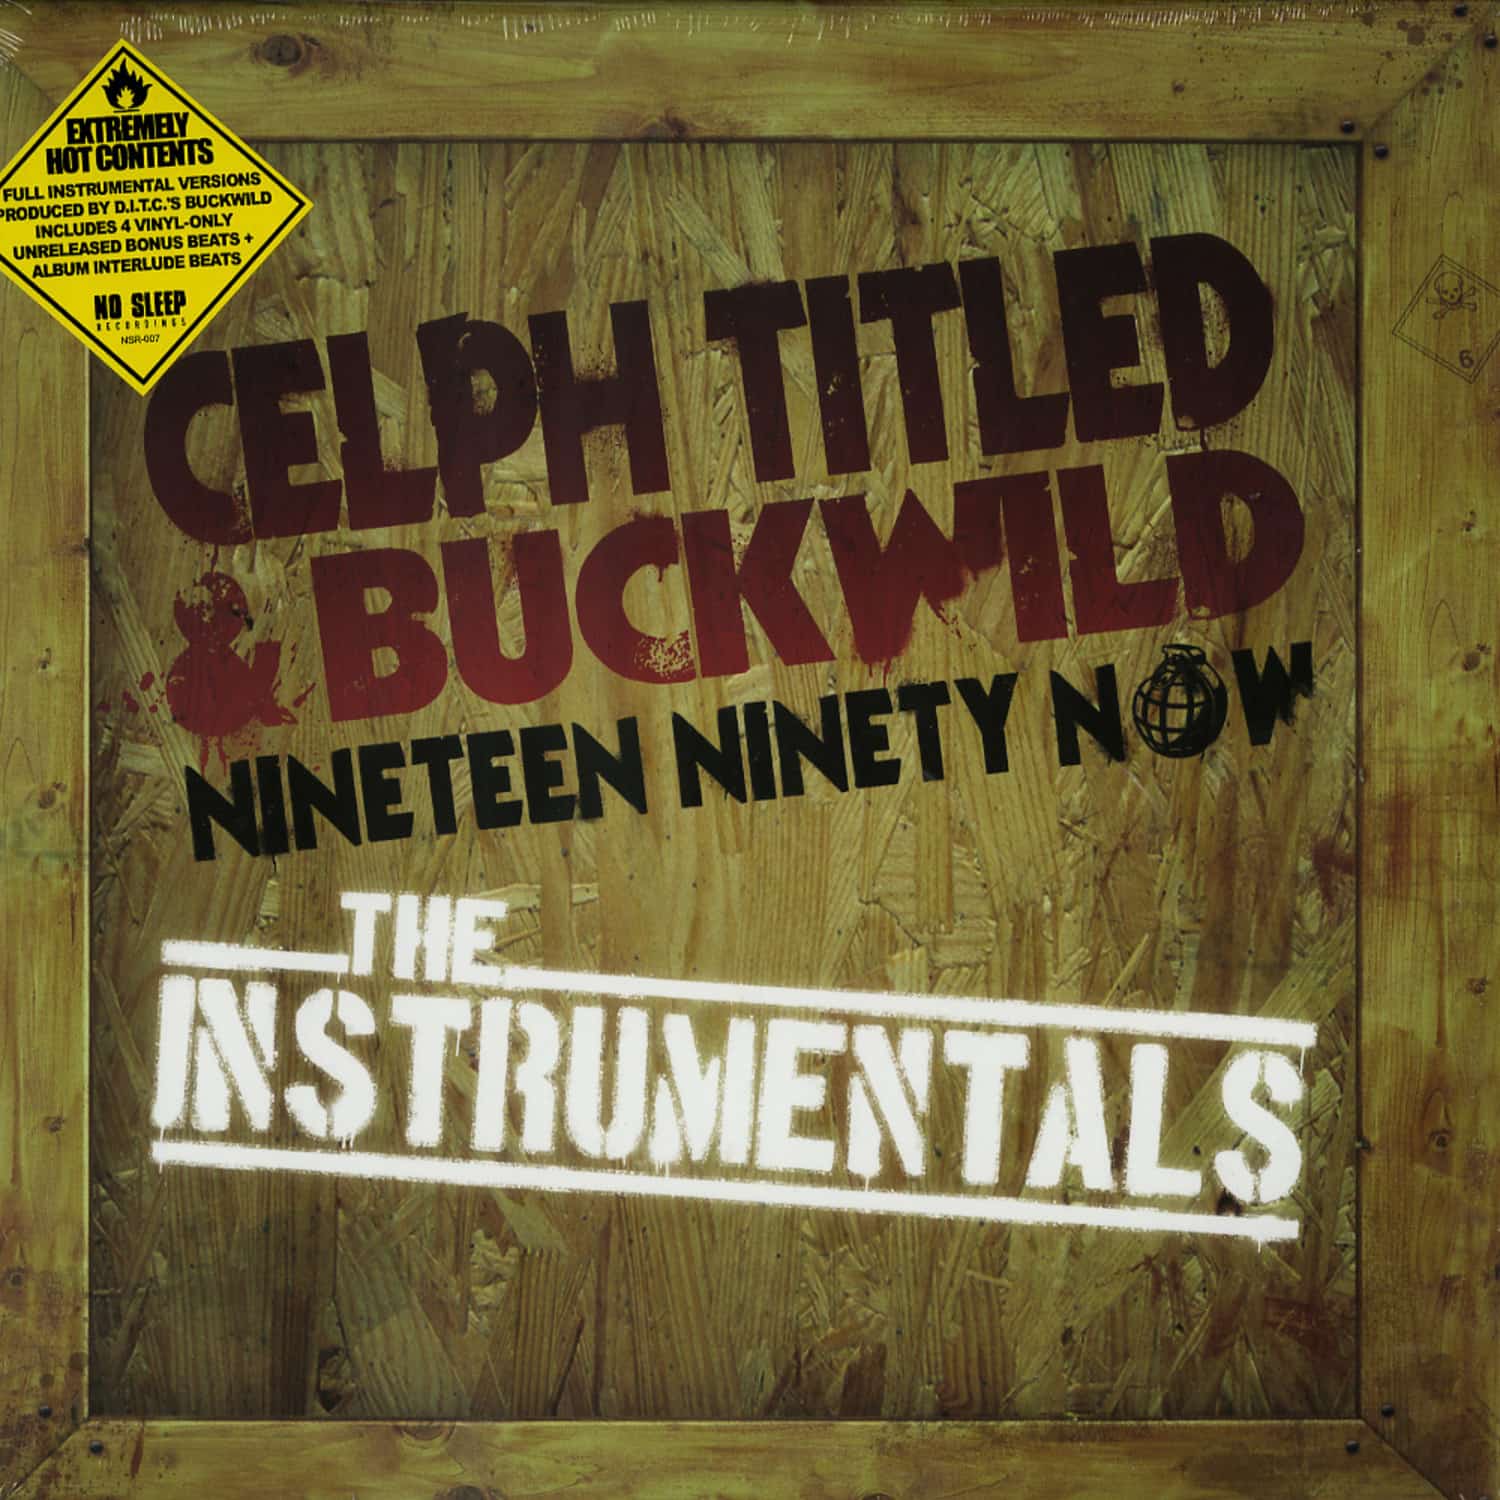 Celph T Itled & Buckwild - NINETEEN NINETY NOW 